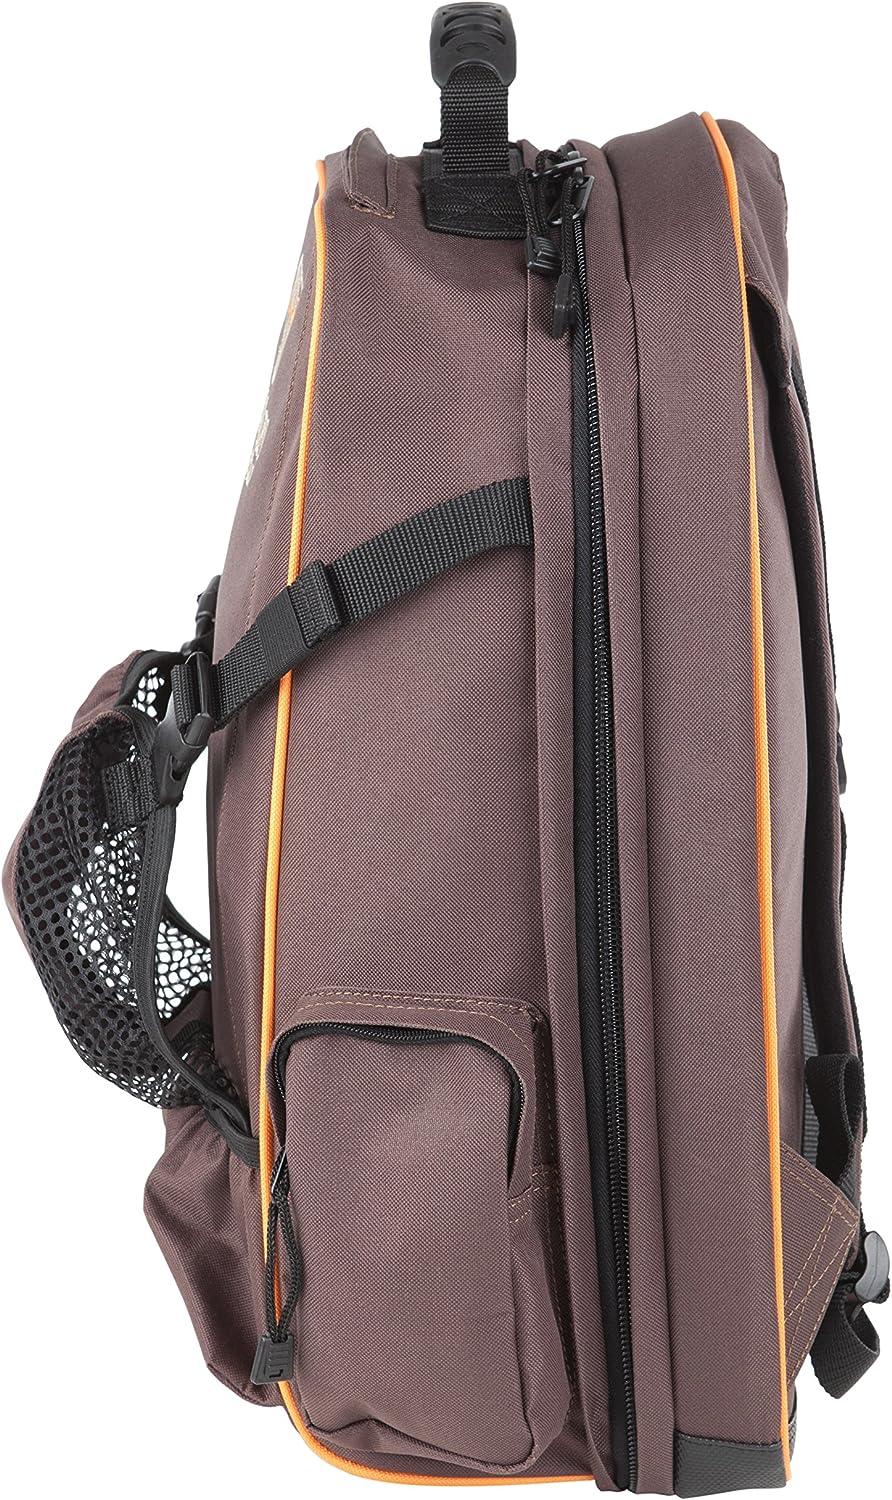 Huntley Equestrian Deluxe Travel Garment Bag